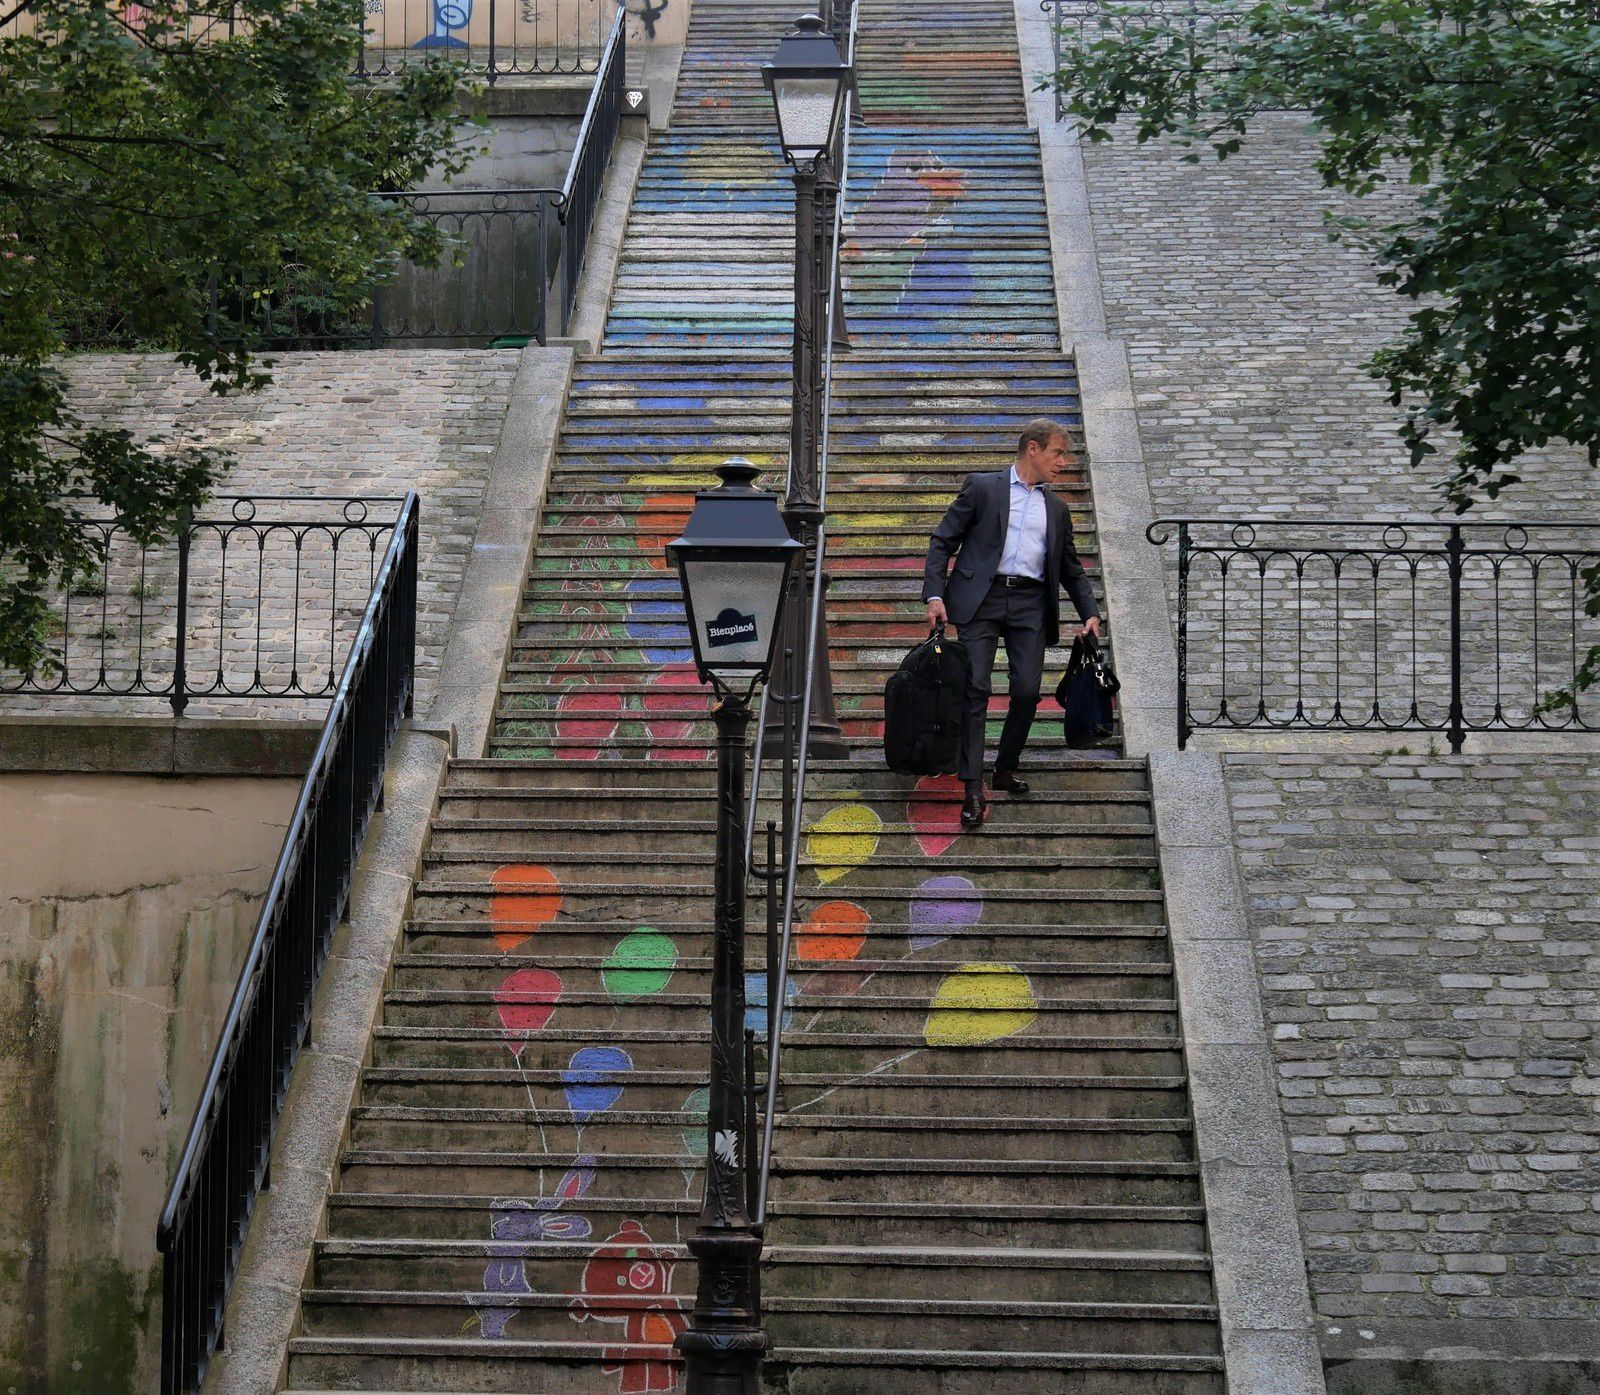 Les escaliers de craie décorés par les enfants des écoles en mai 2019.